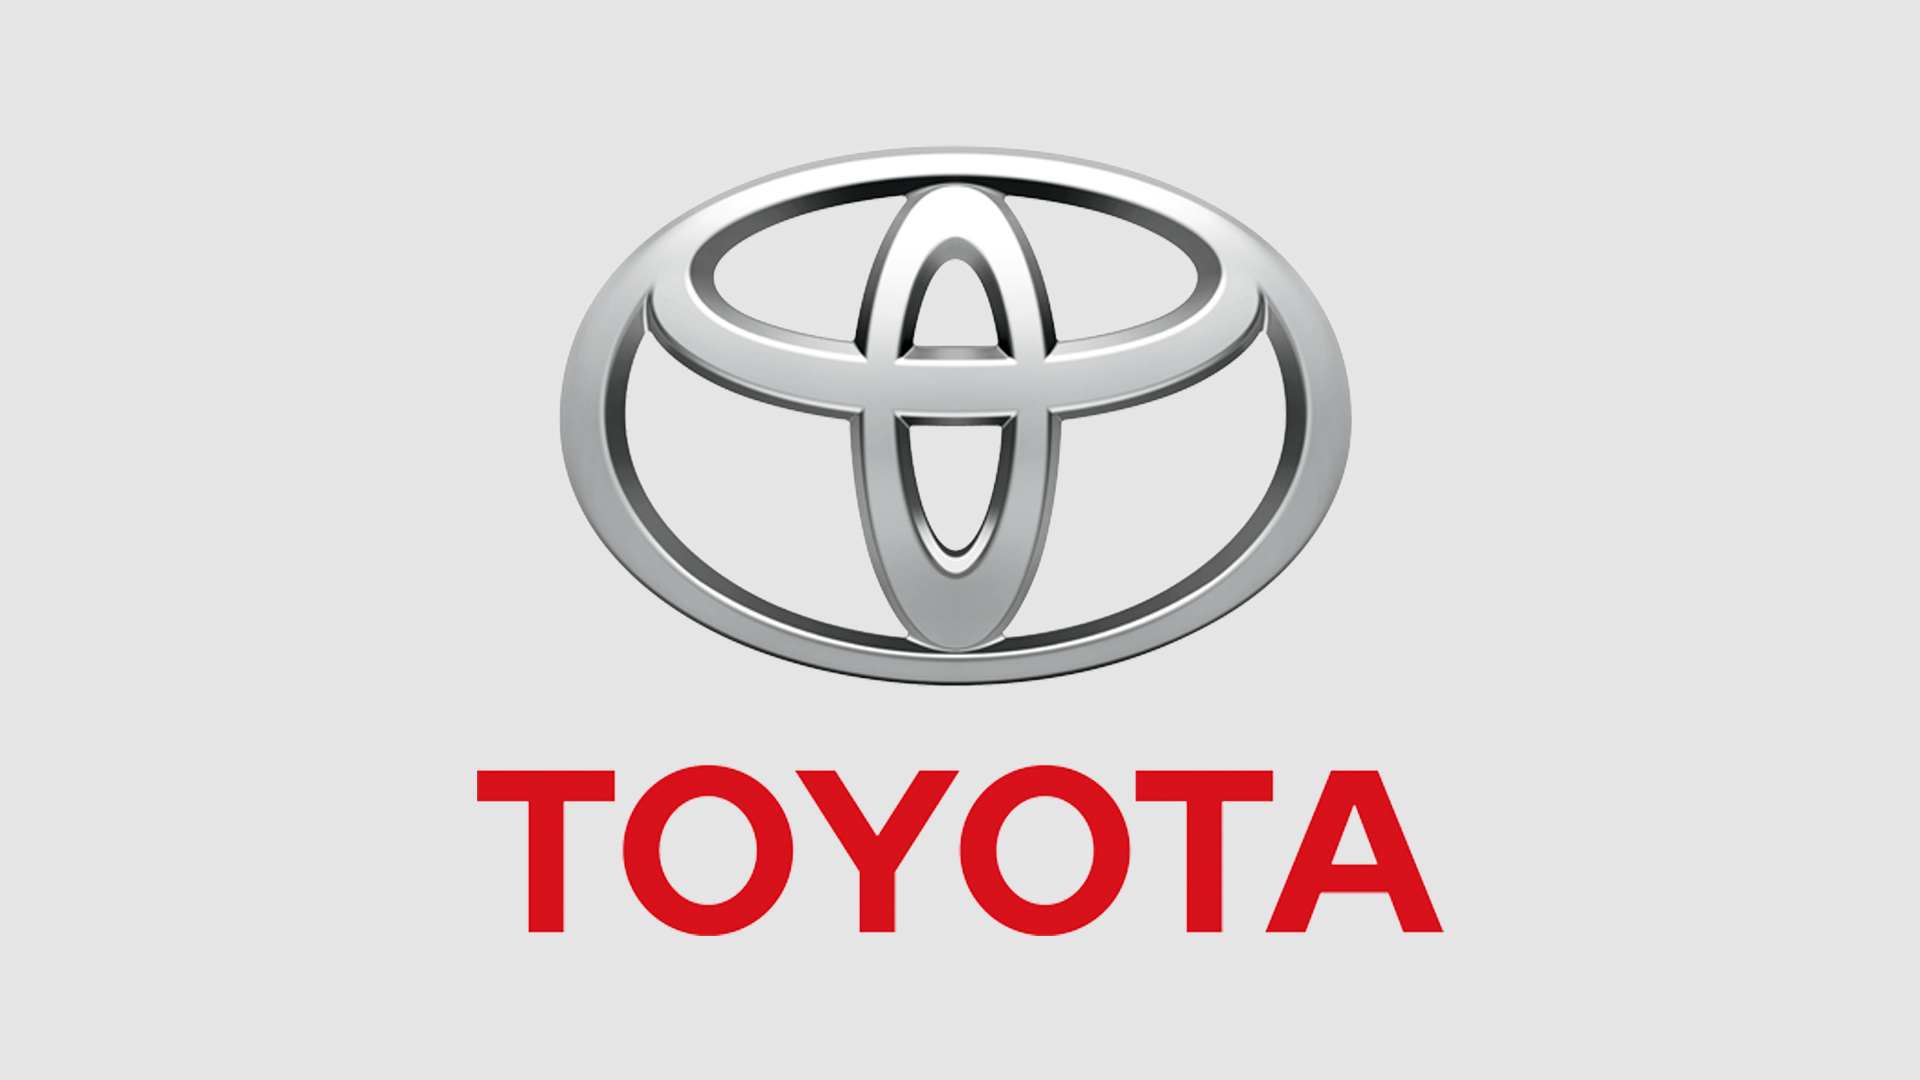 Thiết kế logo góp phần tạo nên điểm nhấn cho sự thành công của Toyota